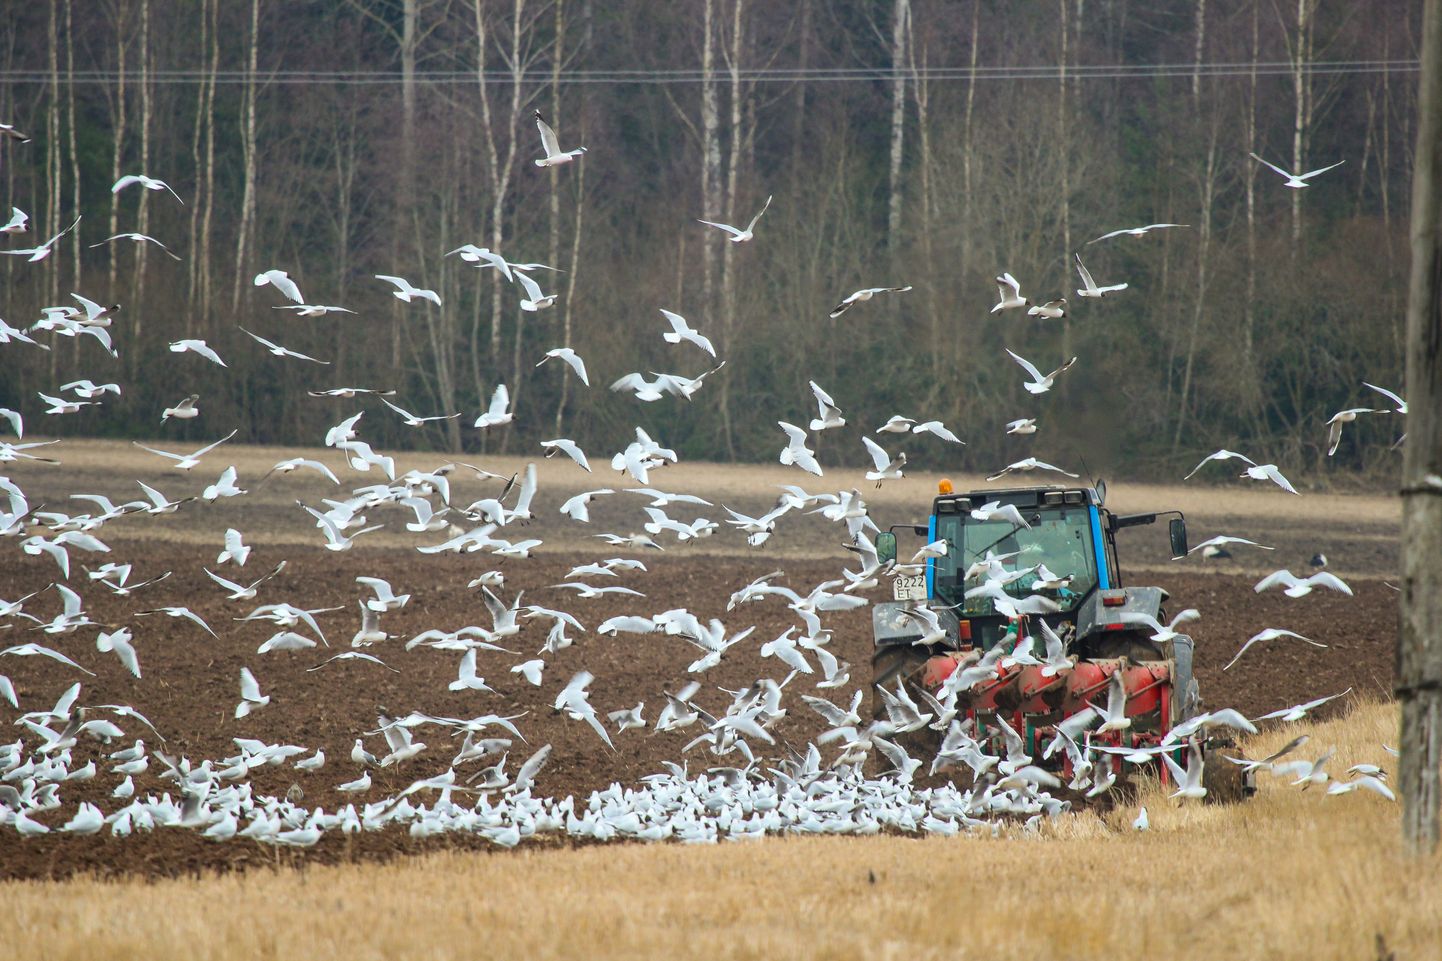 Põllumajandusuuringute Keskuse 2020. aasta kogumiku andmetel on Eestis 10 aastaga erinevate pestitsiidide arv ühe põllumullaproovi kohta kasvanud 0,61-st 7-ni.